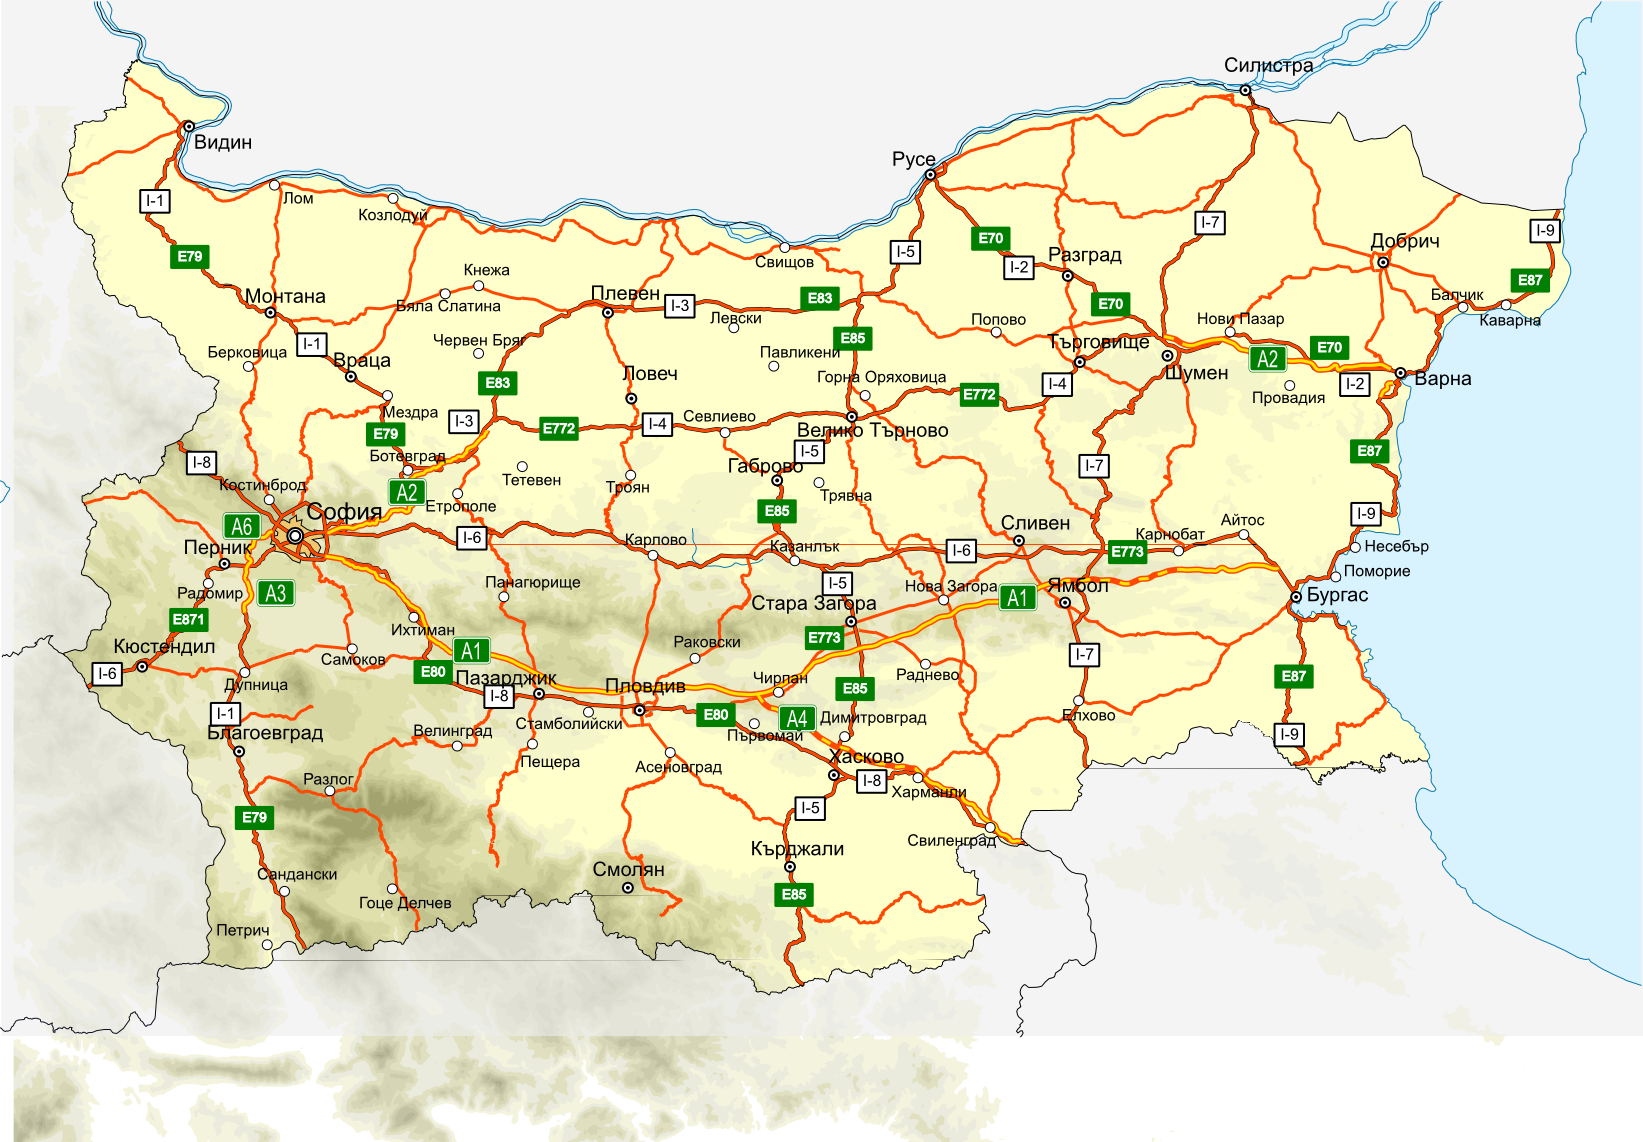 Bulgaria_roads_map_bg.png